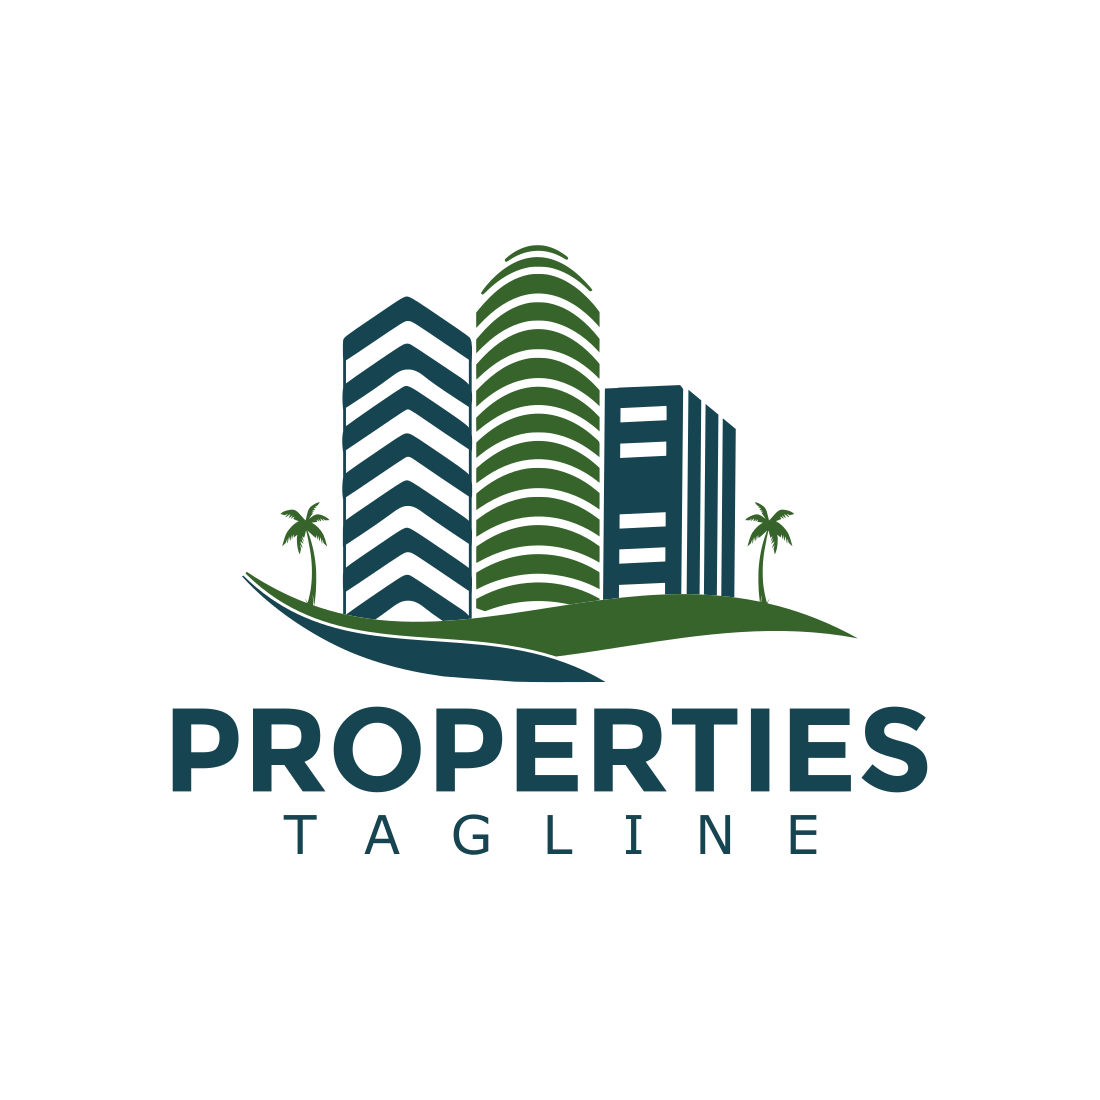 Elegant Properties Logo Design Template previews.